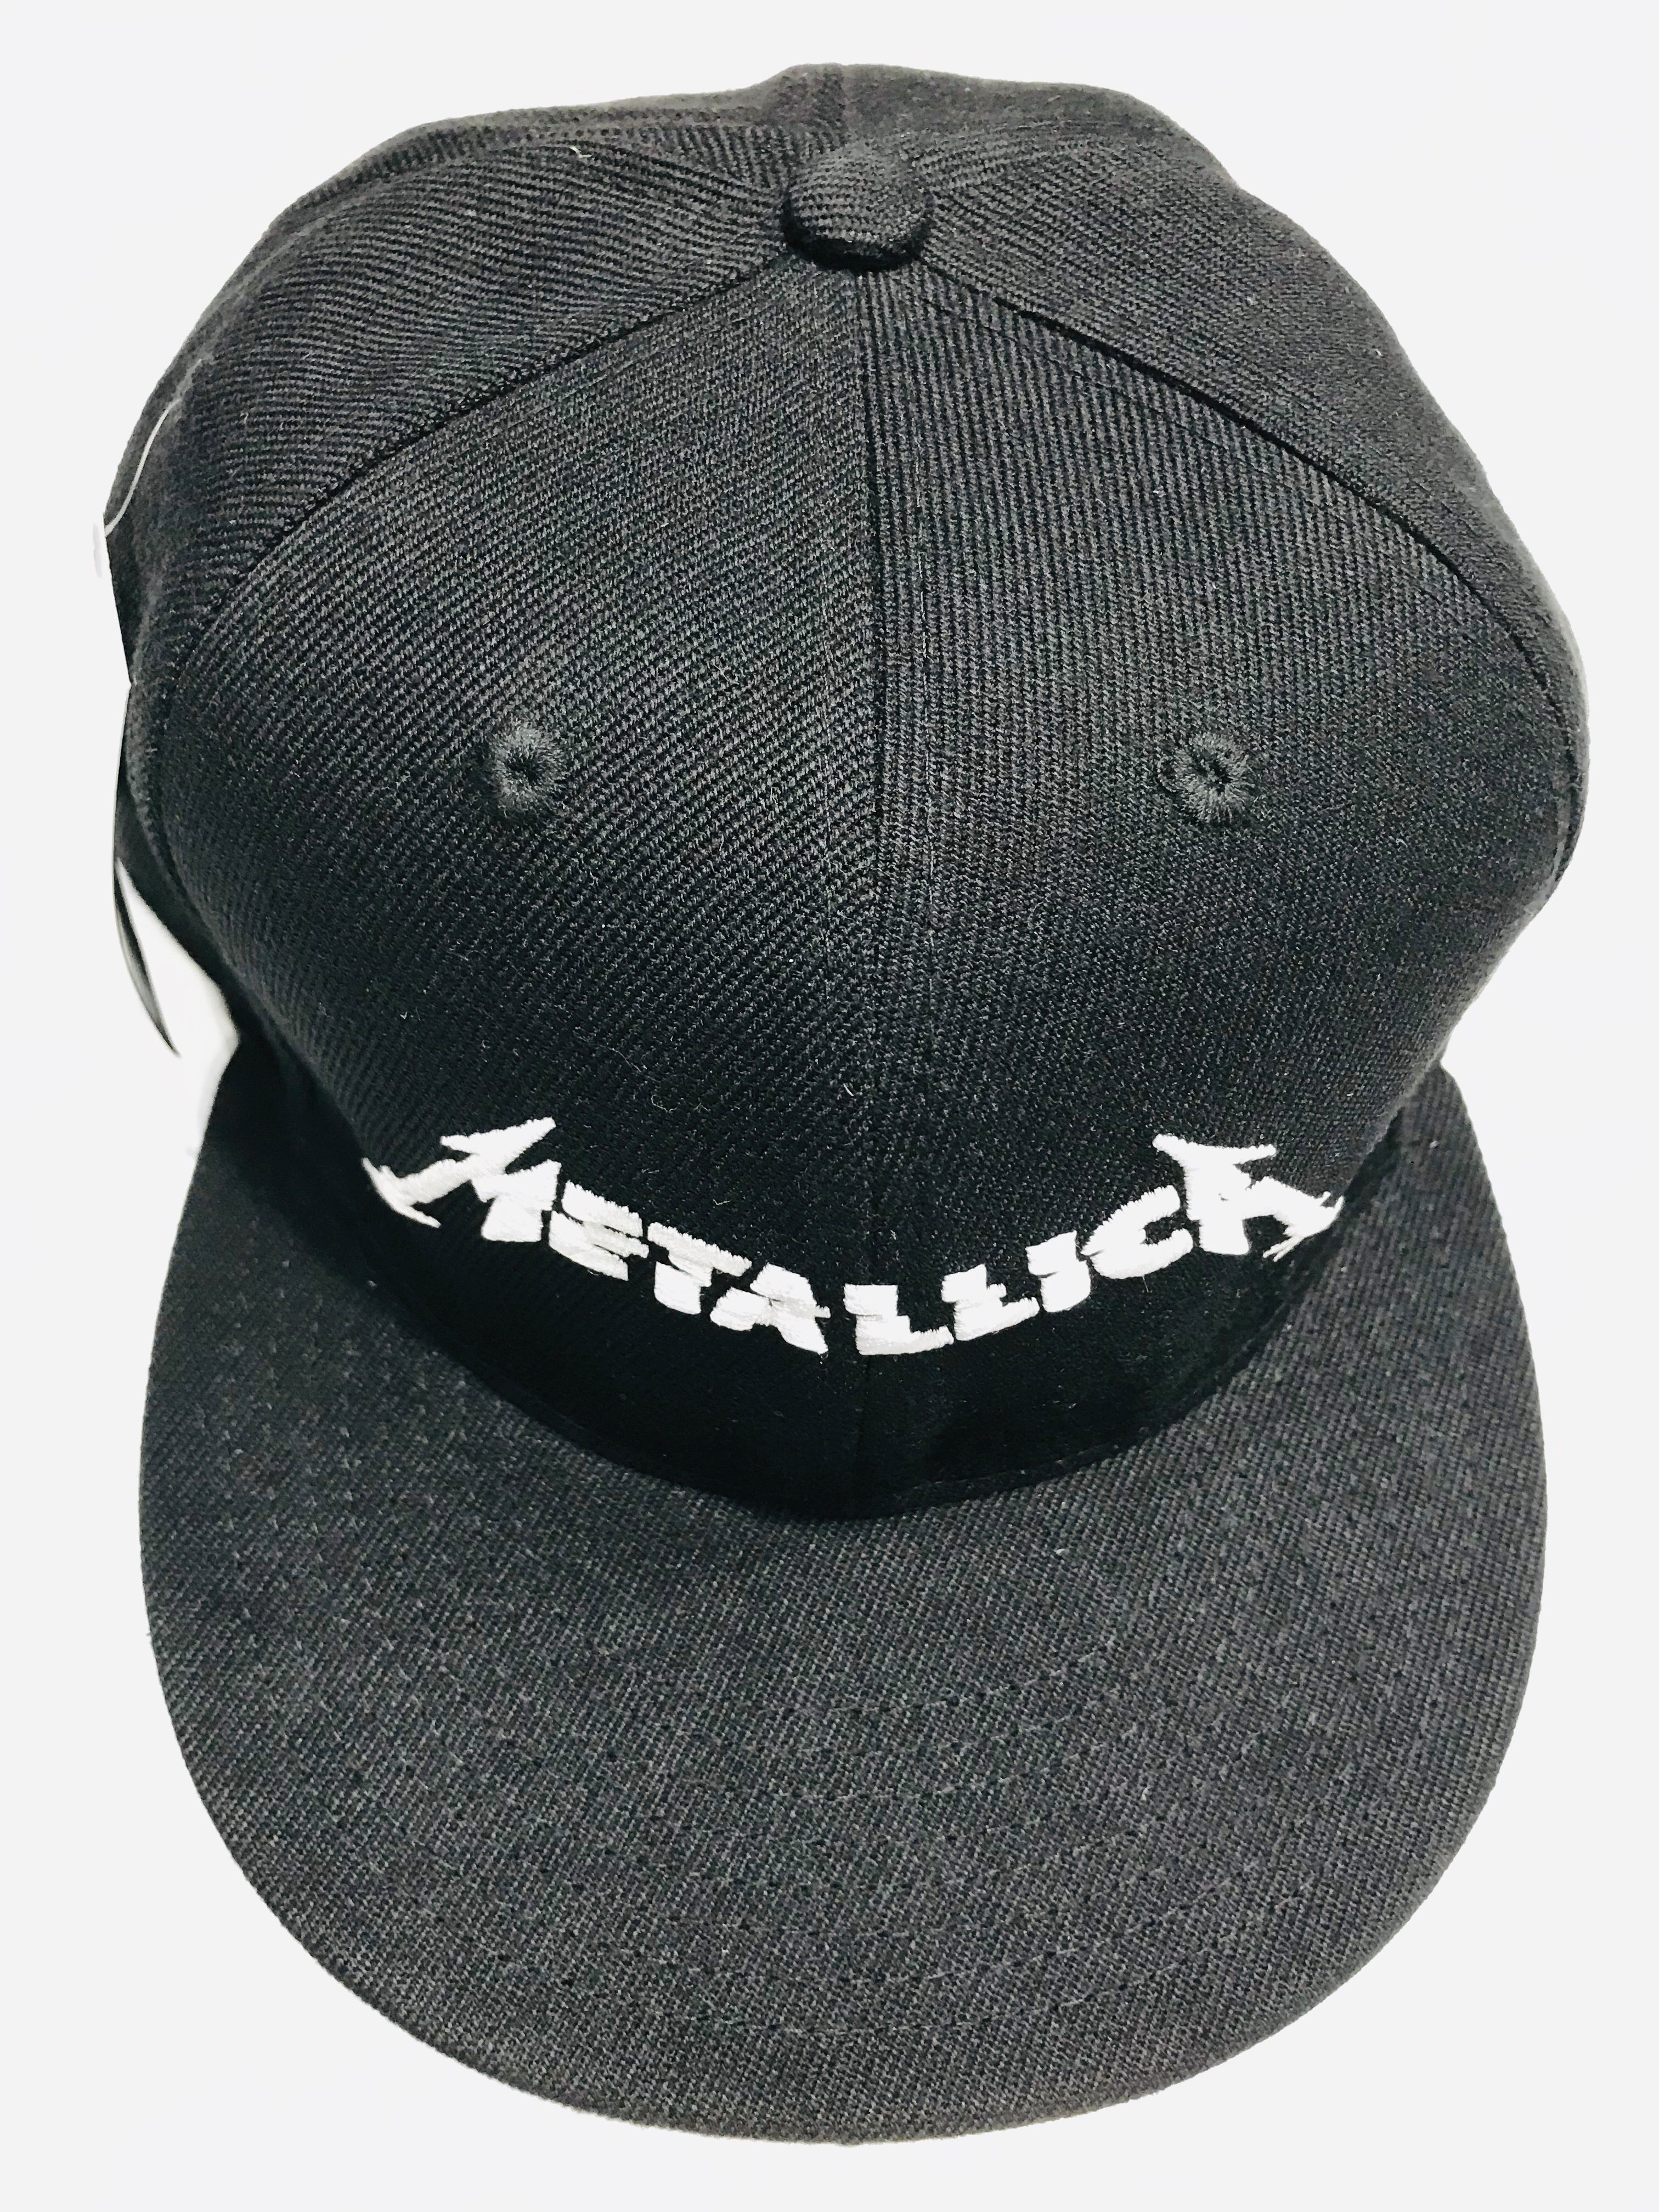 Metallica Hardwired Snapback Cap – Famous Rock Shop